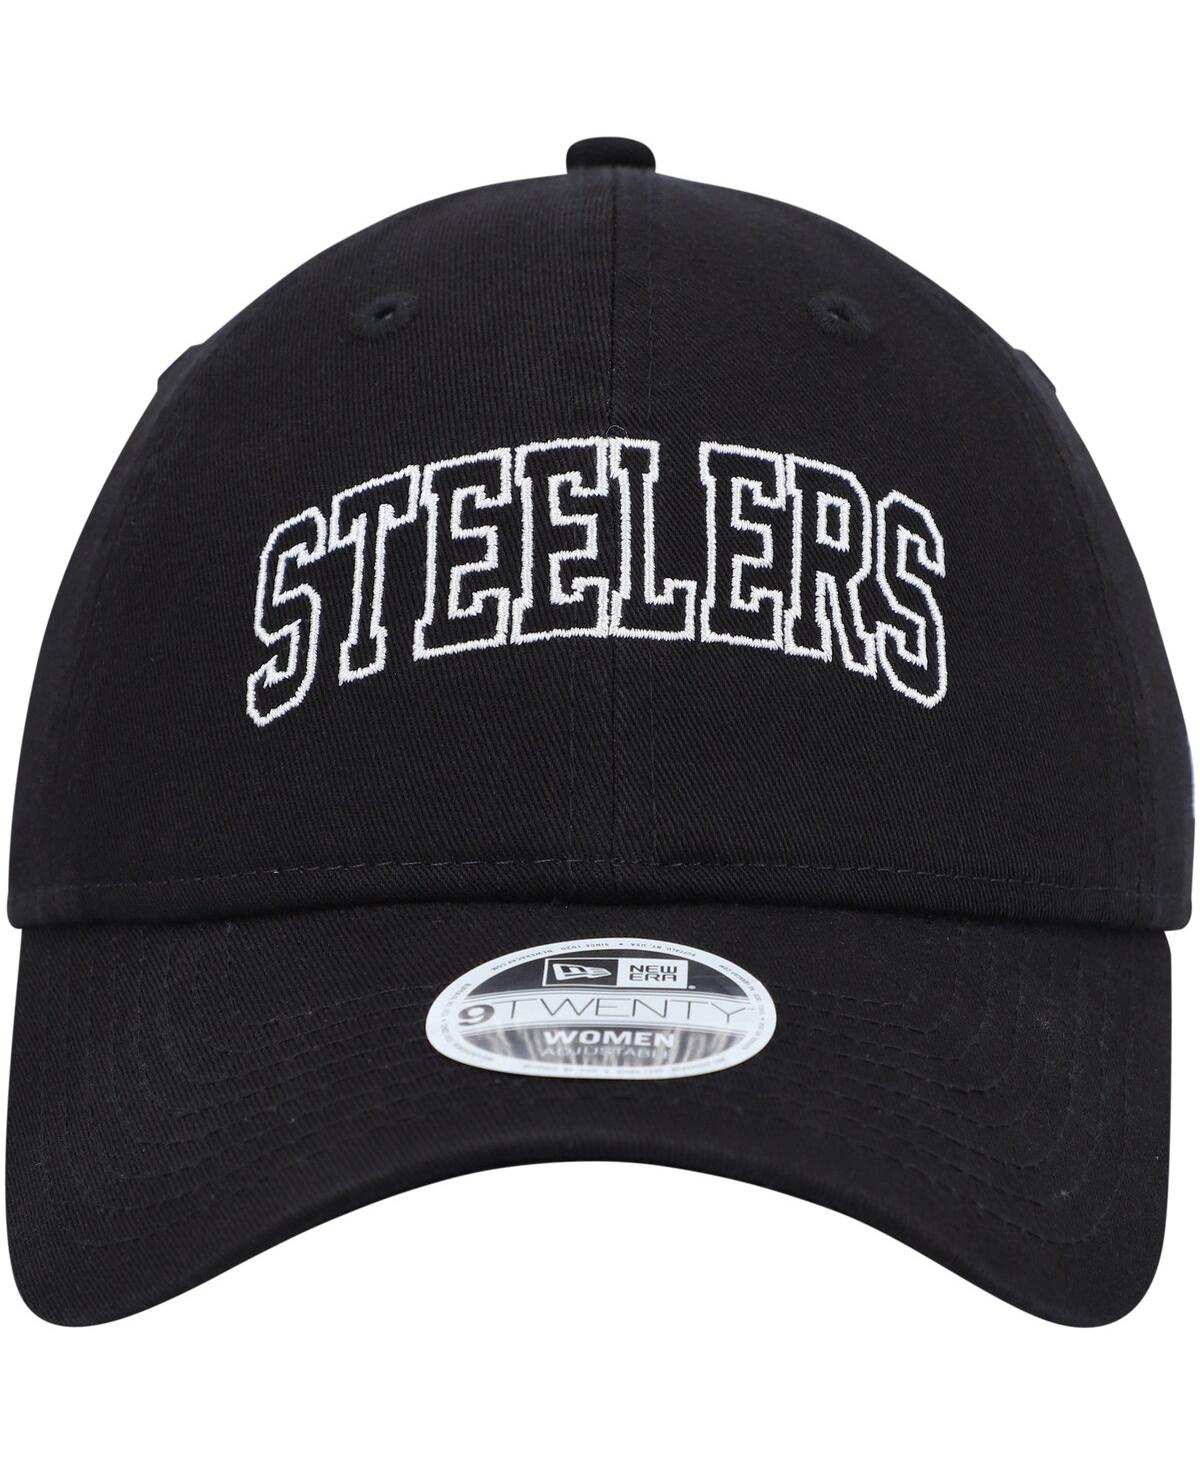 Shop New Era Women's  Black Pittsburgh Steelers Collegiate 9twenty Adjustable Hat